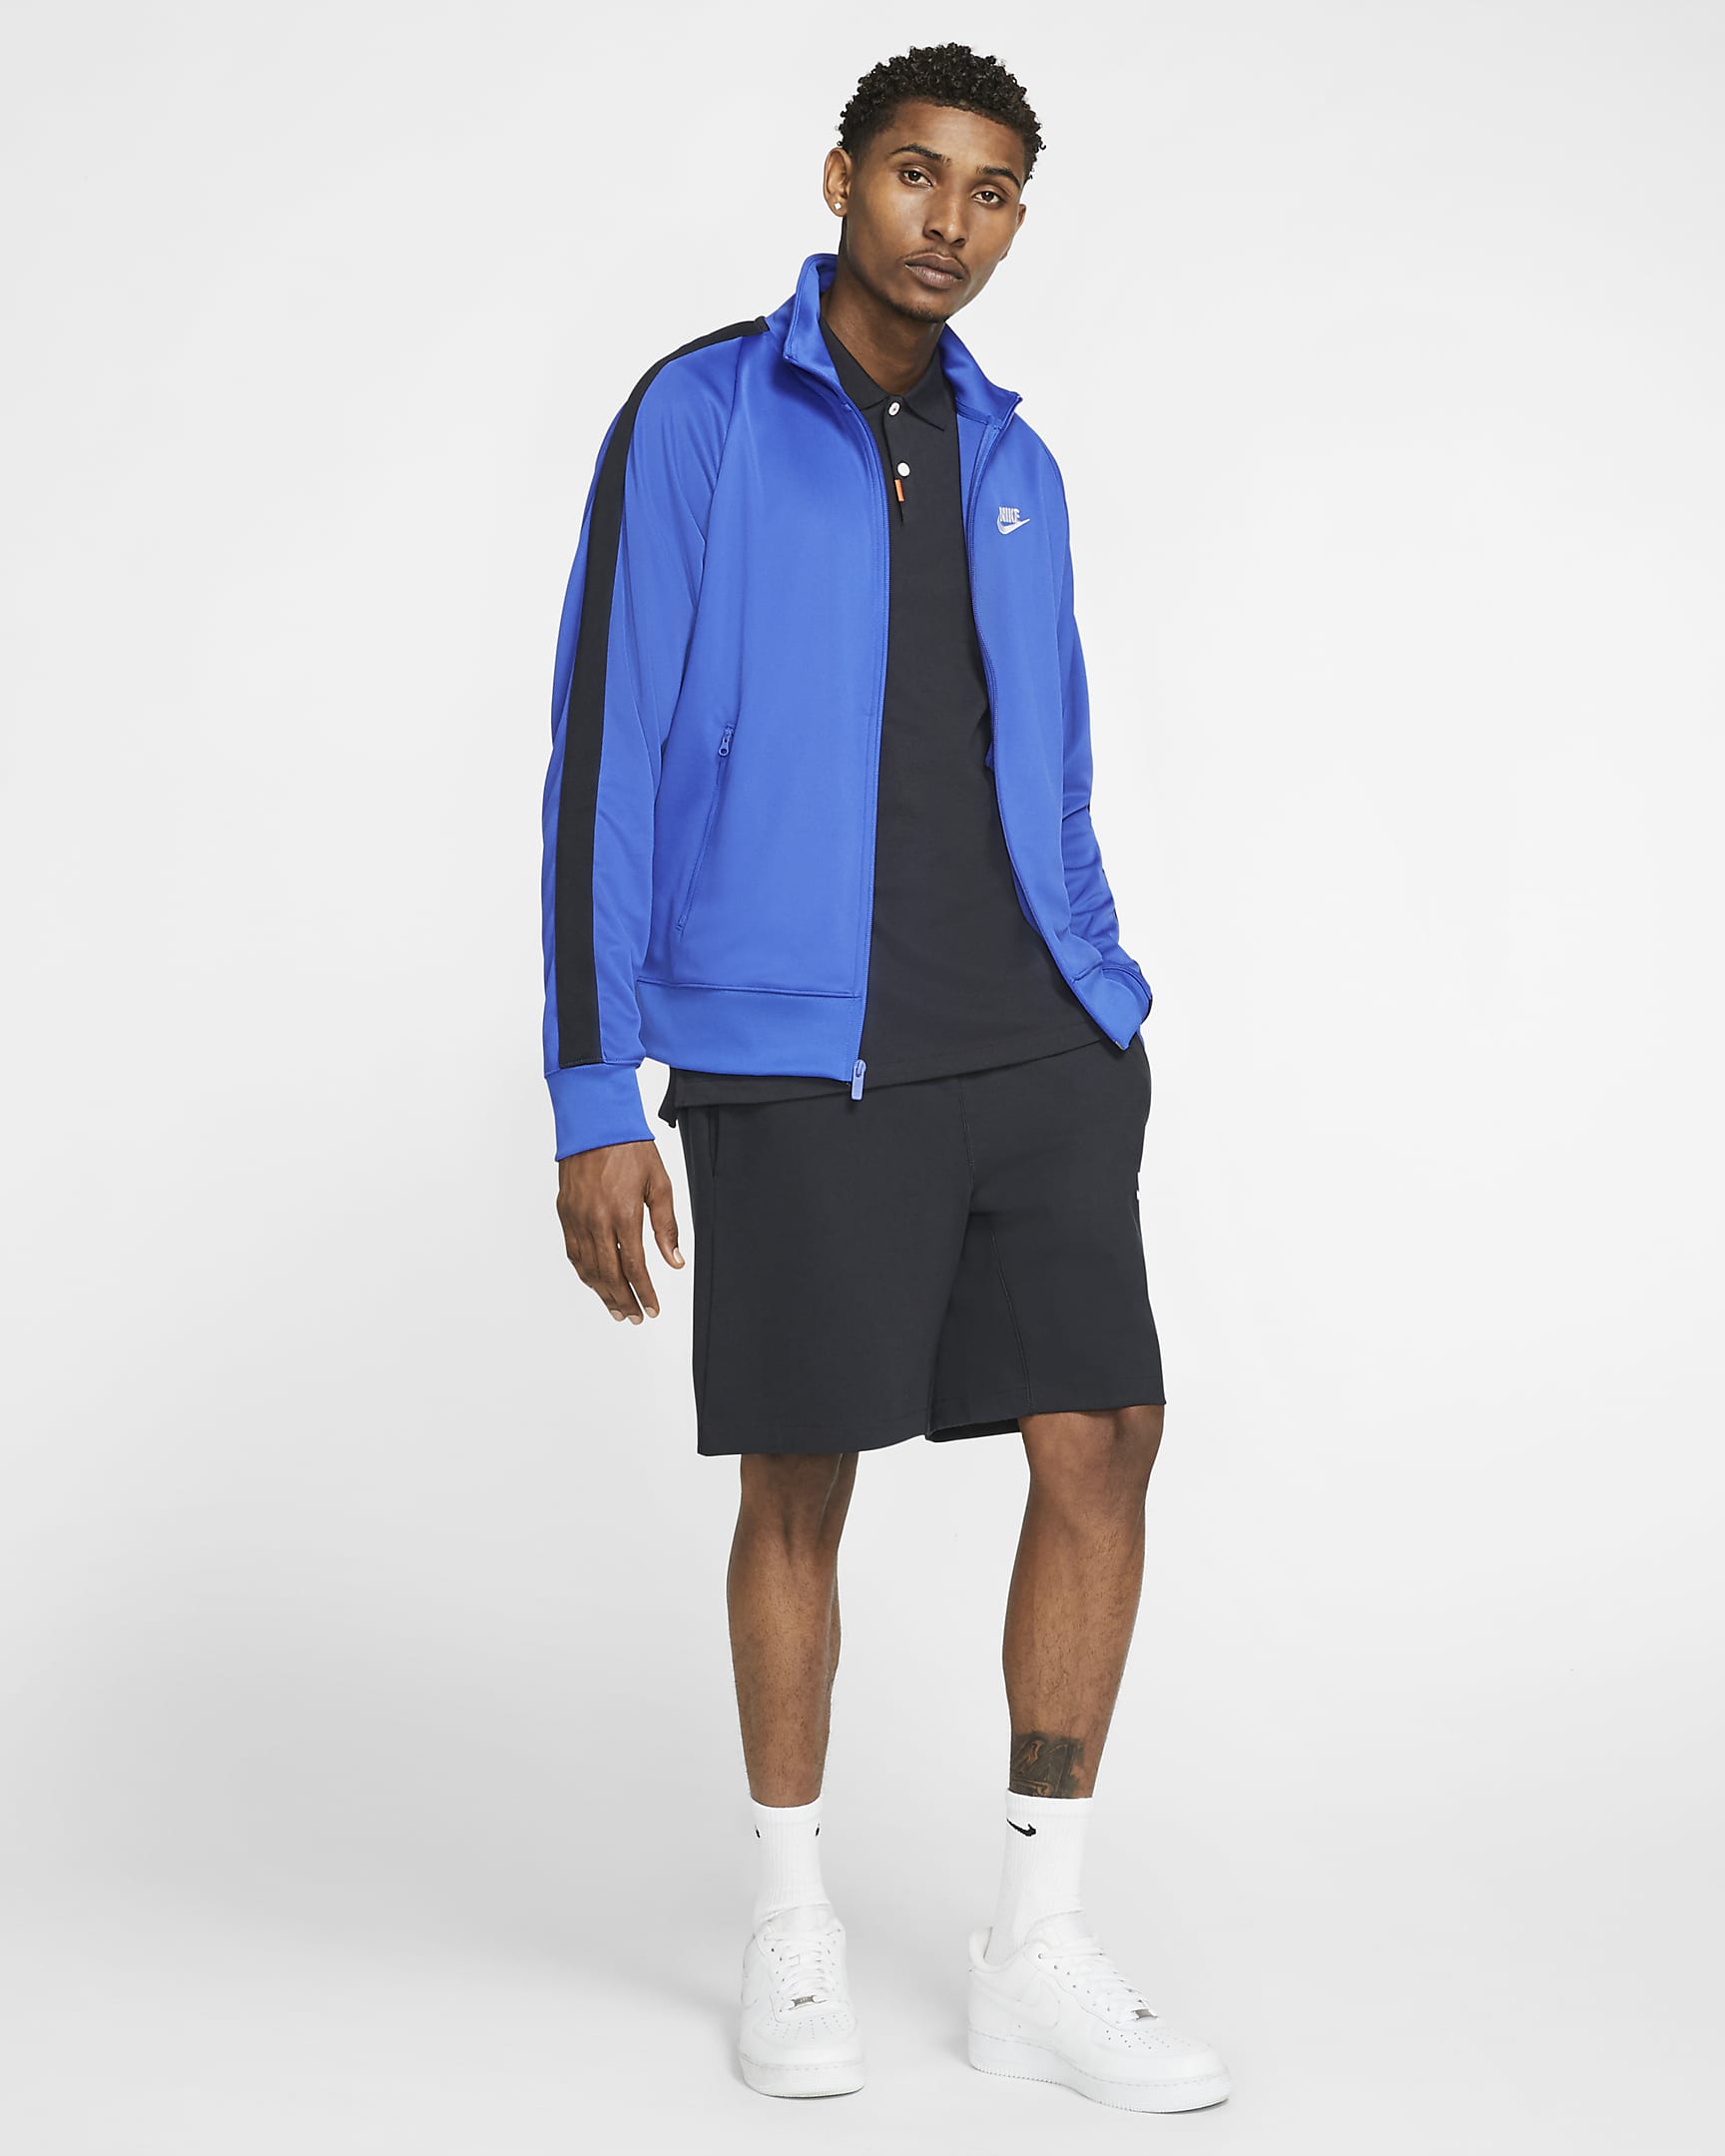 Nike Sportswear N98 Men's Knit Warm-Up Jacket. Nike.com